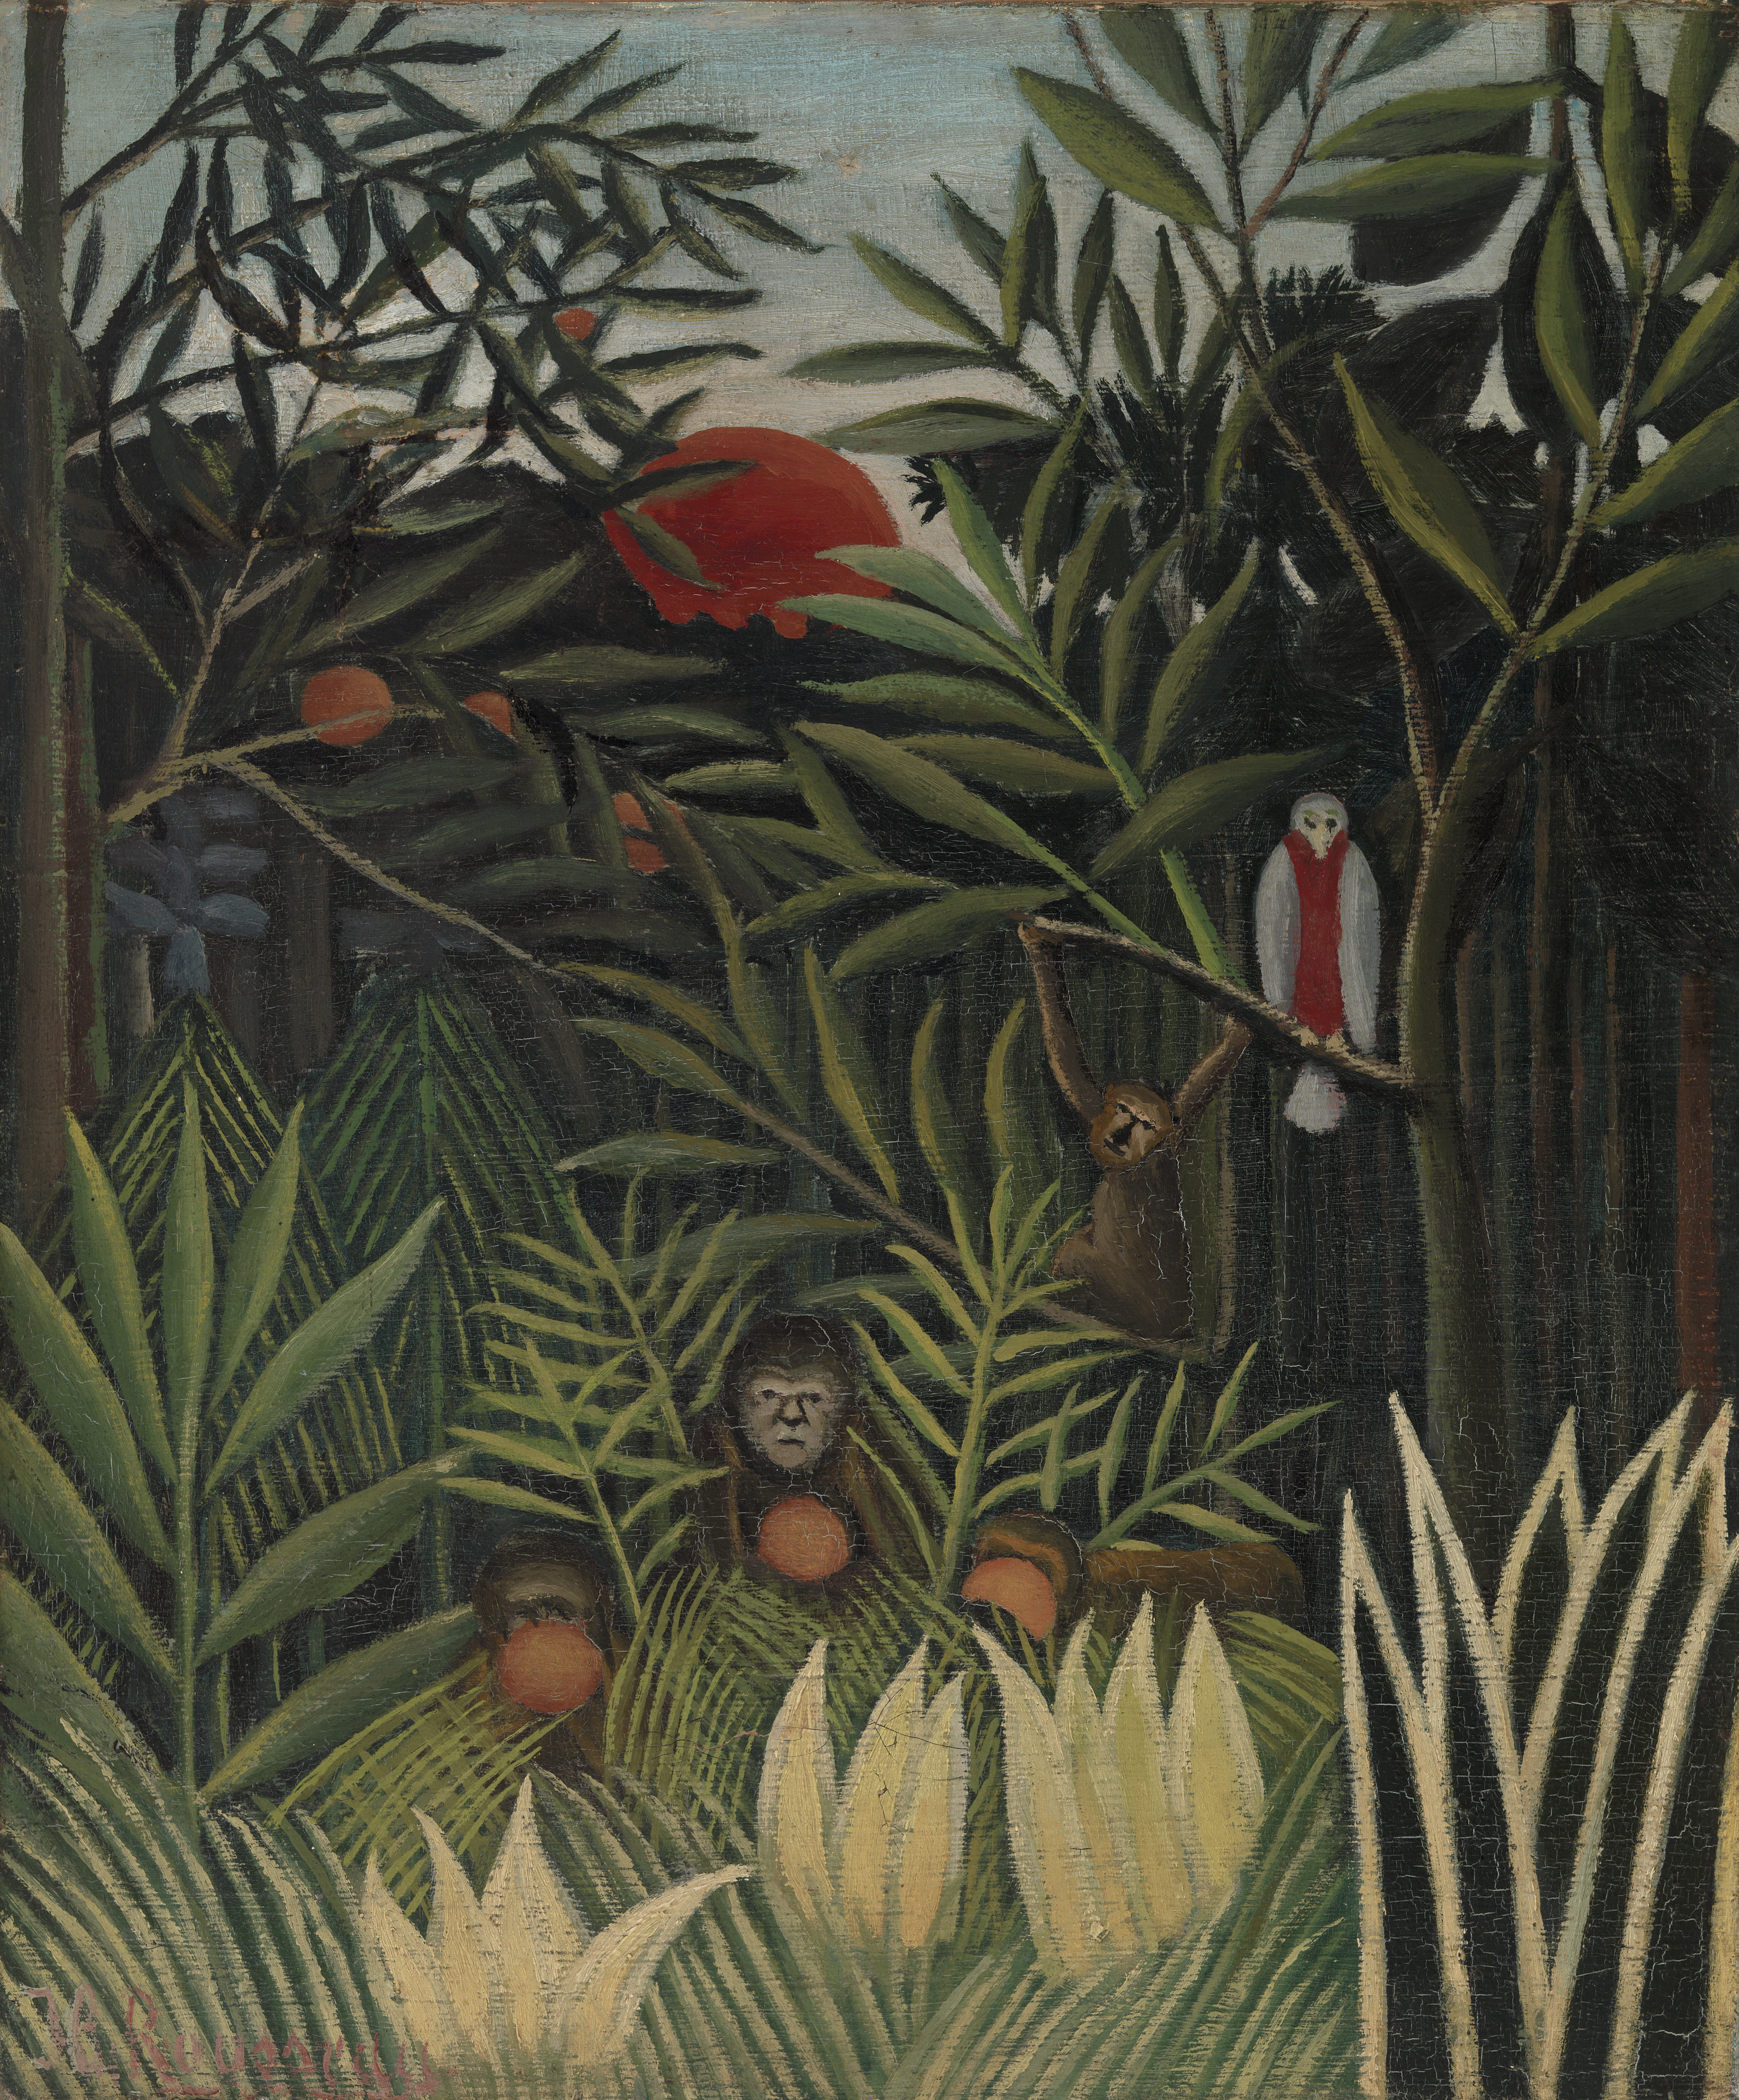 Singes et perroquet dans la forêt vierge, ca. 1905-1906 by Henri Rousseau, at Barnes Foundation, Philadelphia. Public Domain. 